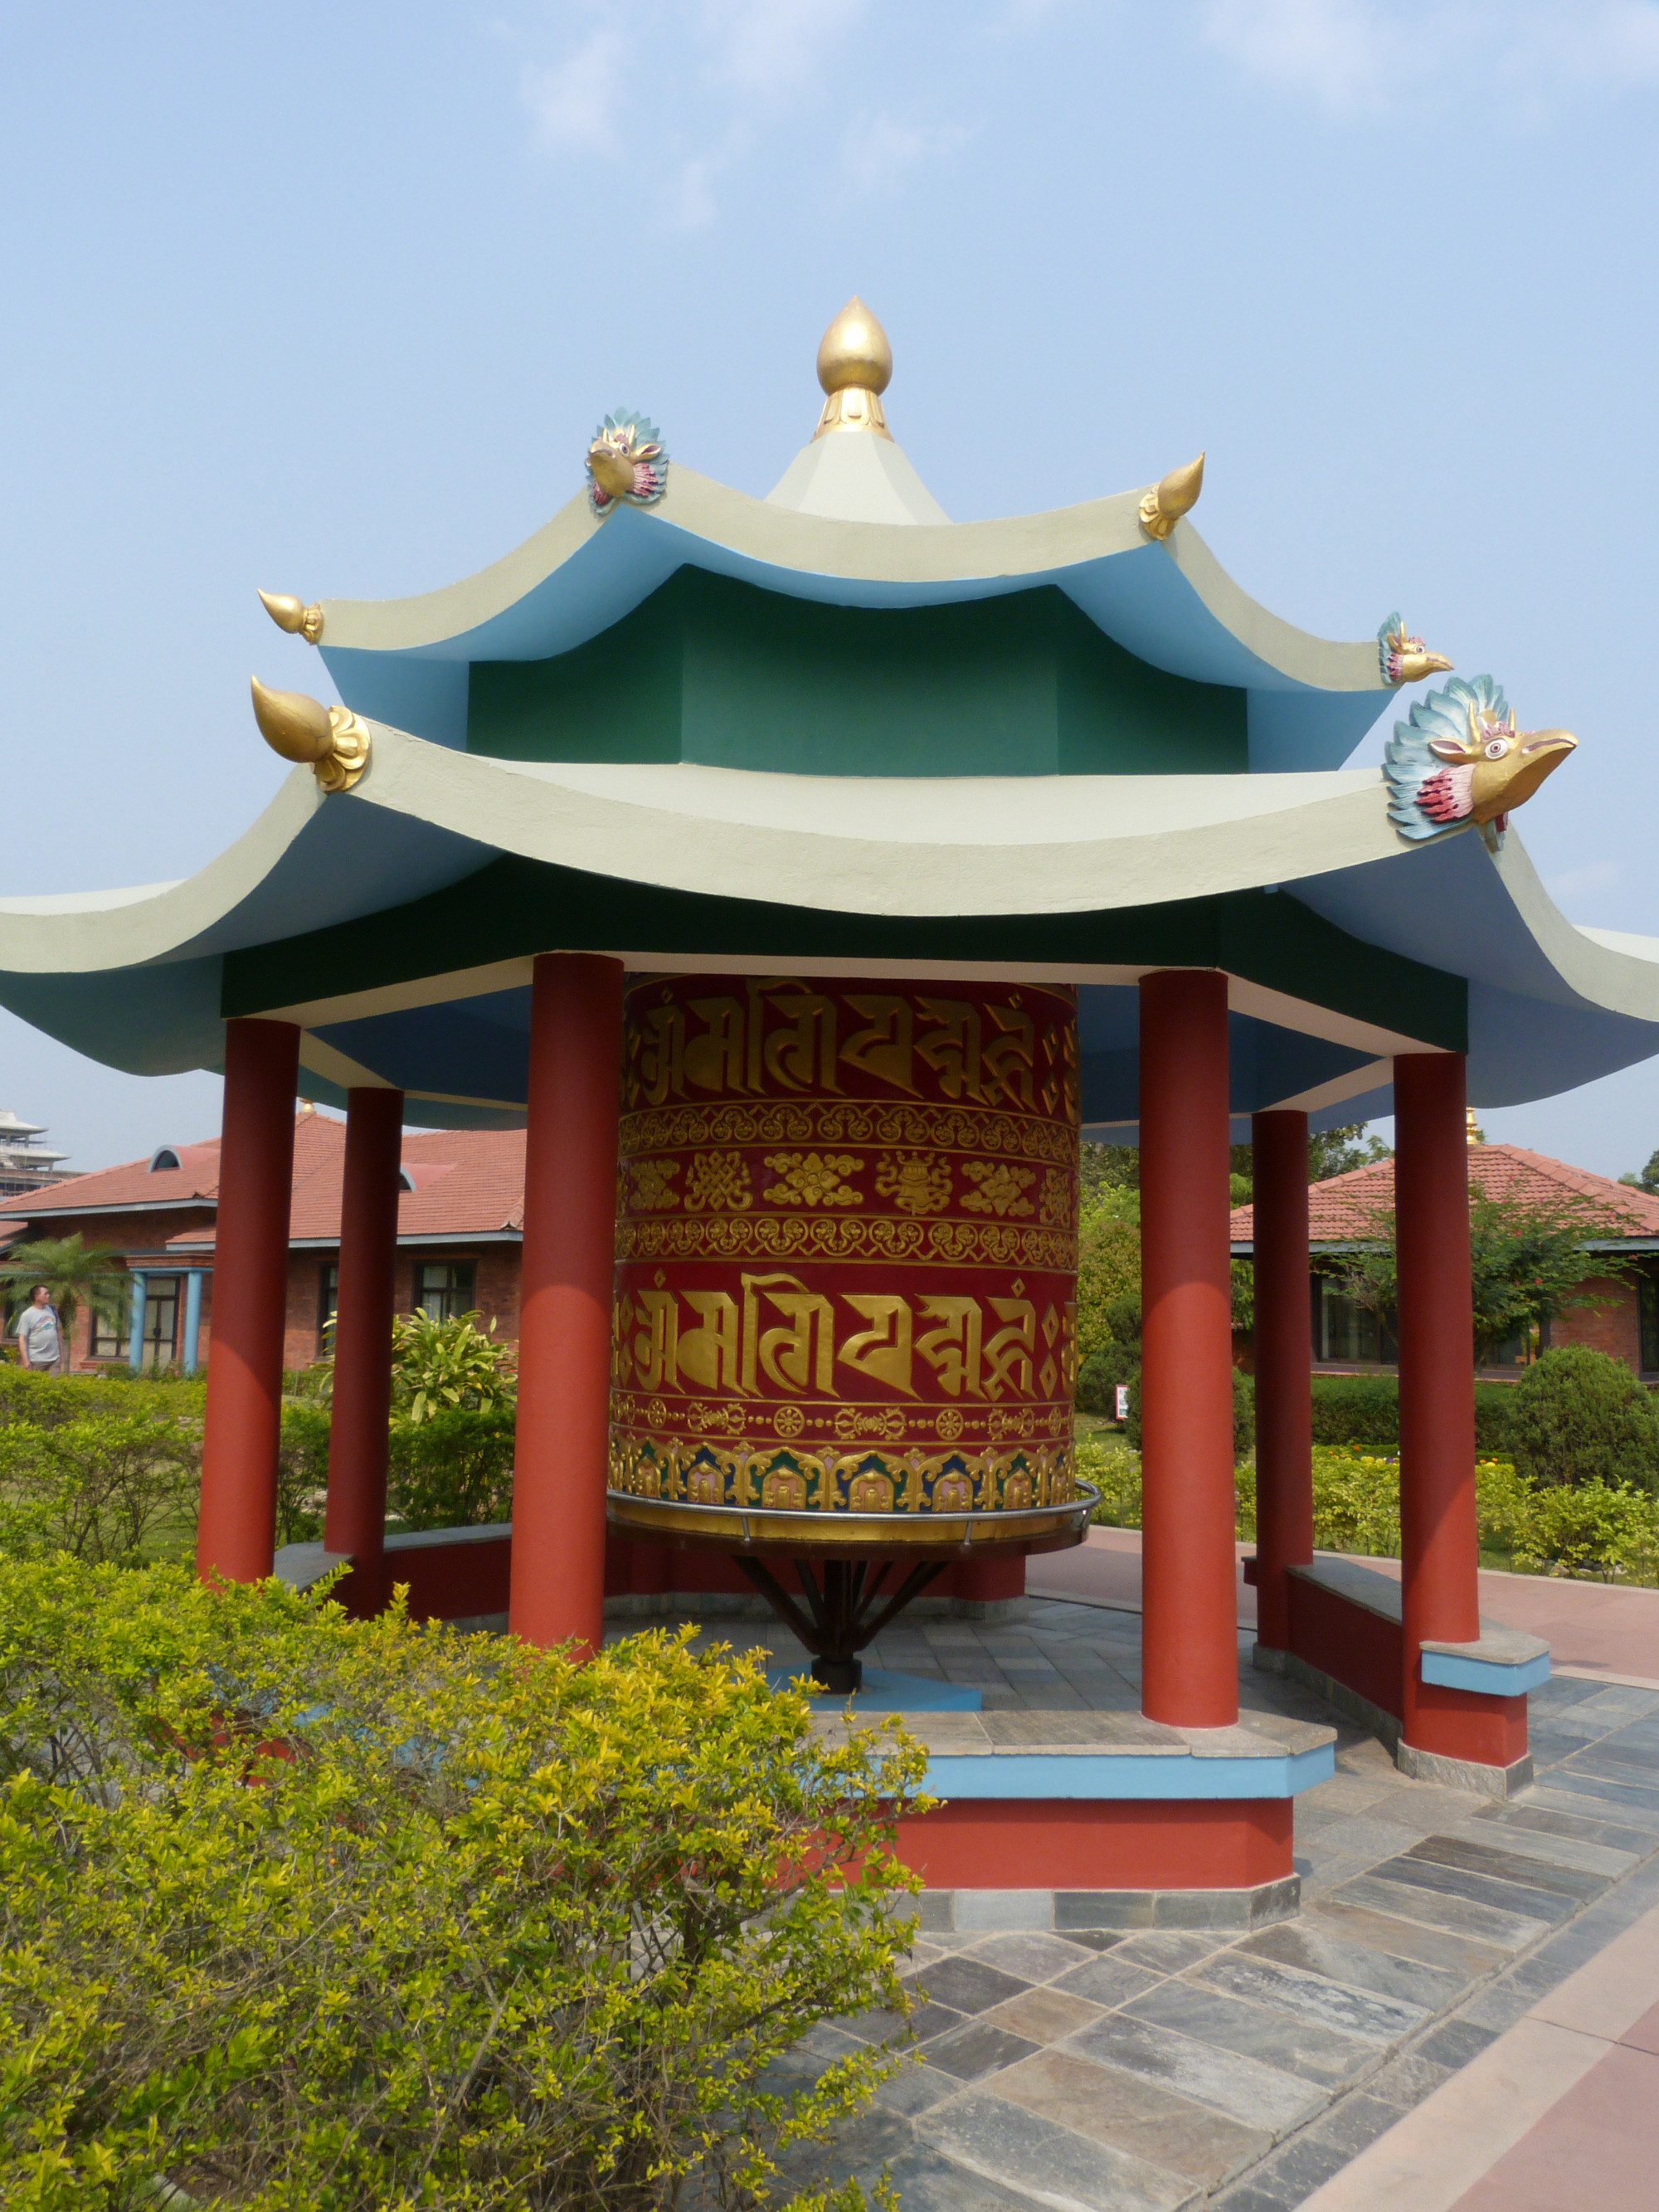 Chinese Buddhist Monastery, Nepal